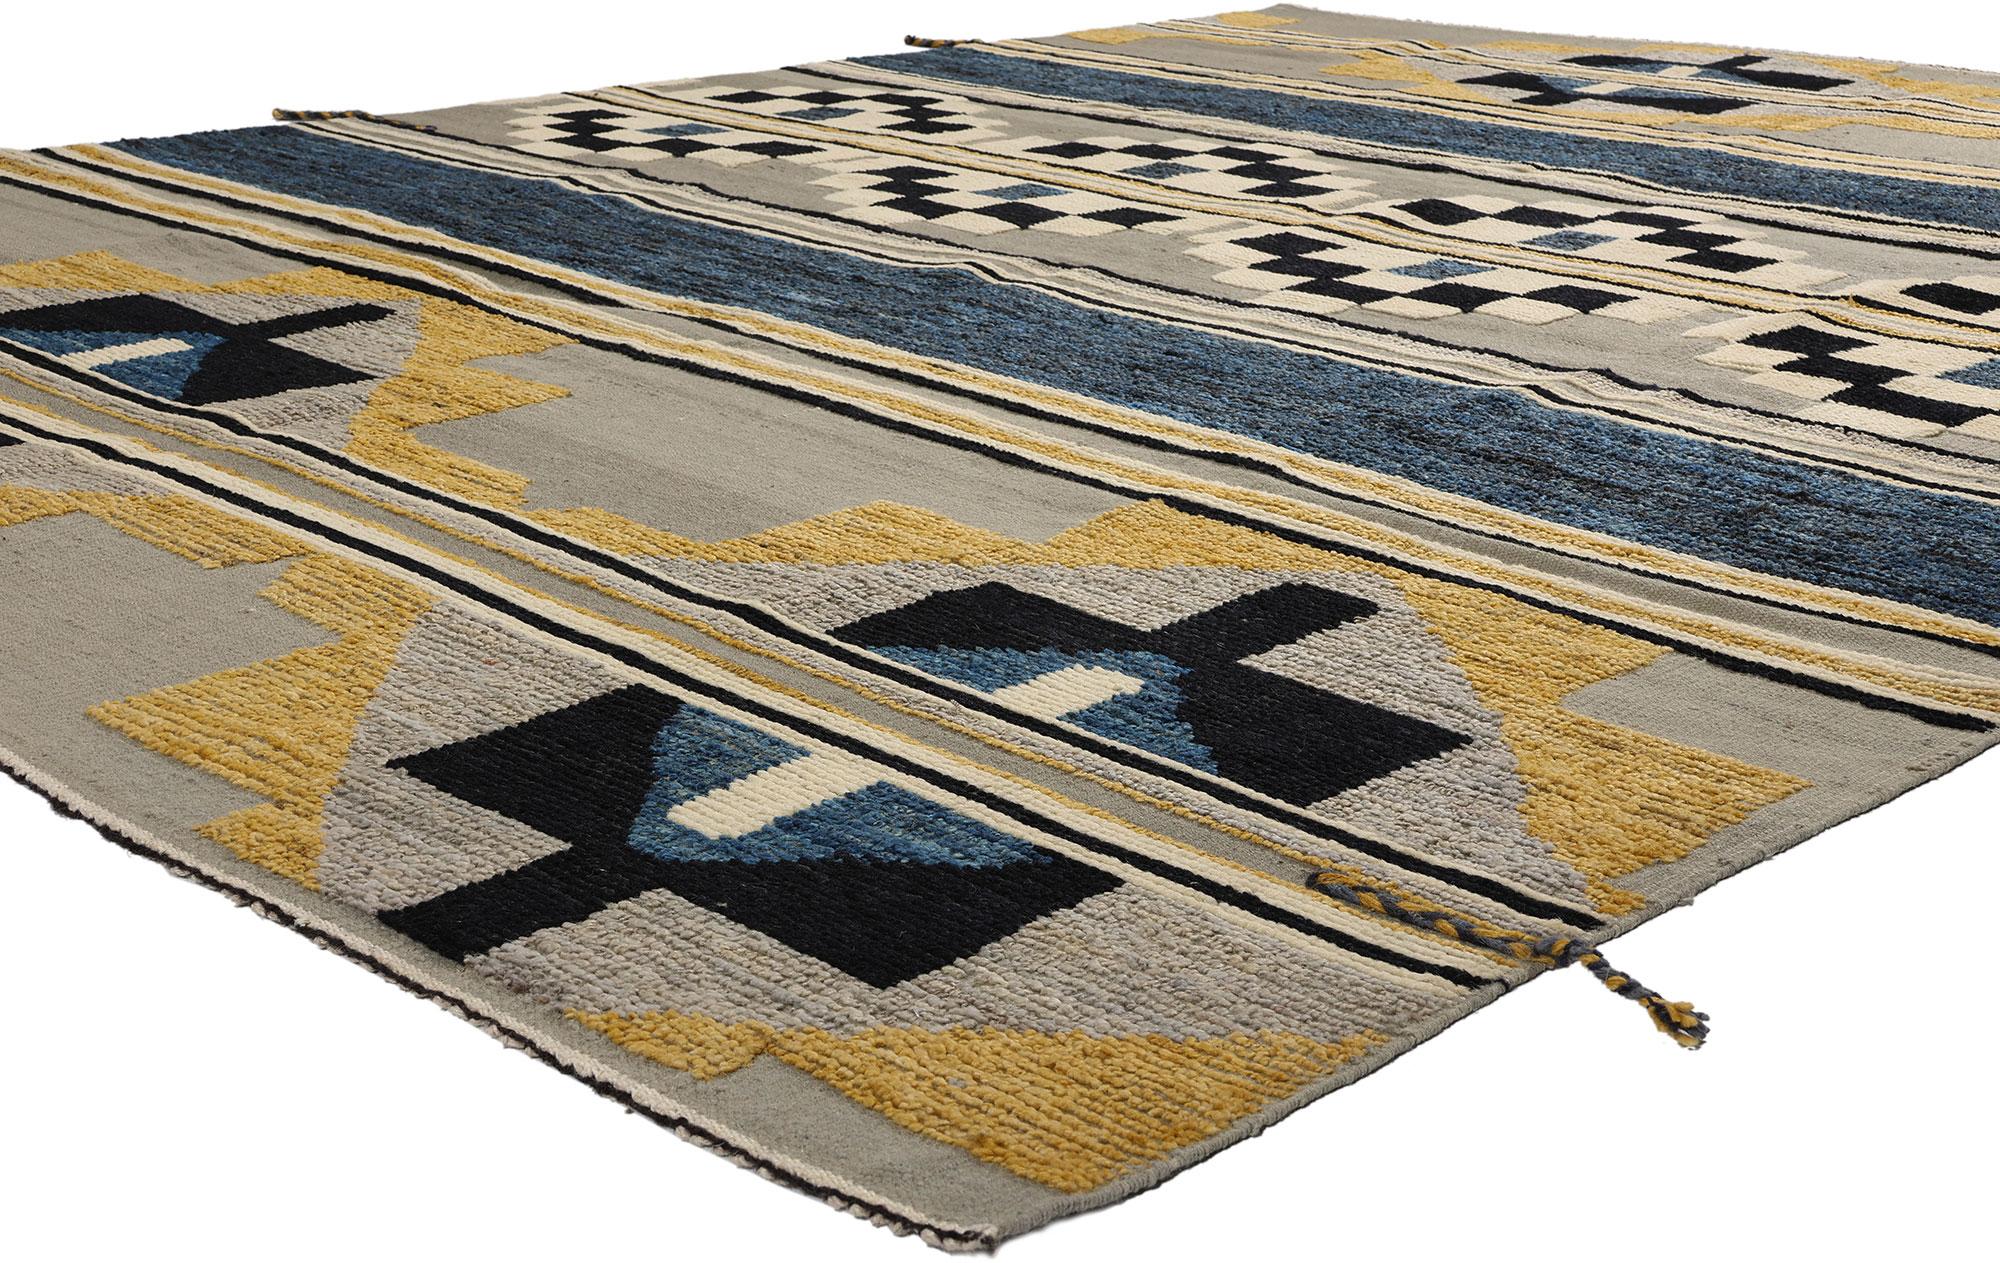 81056 Tapis High-Low marocain moderne du sud-ouest, 08'02 x 10'06. Ce tapis marocain High-Low en laine nouée à la main allie la modernité du Sud-Ouest à la modernité de Santa Fe, créant ainsi une fusion d'influences culturelles avec l'esthétique du